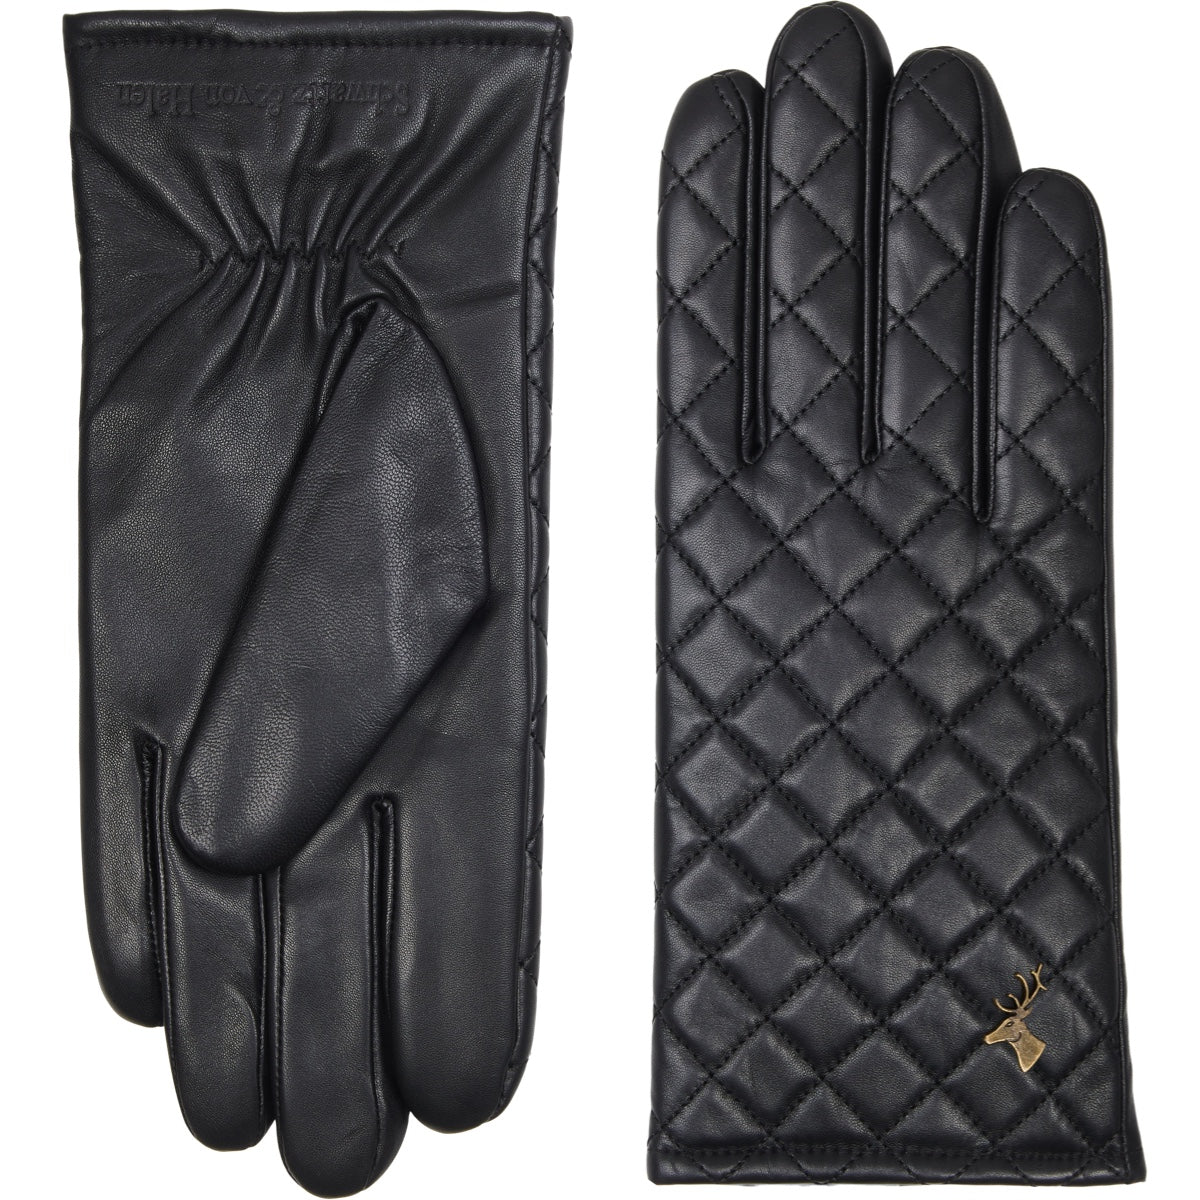 Black Leather Gloves Women Kira - Schwartz & von Halen® - Premium Leather Gloves - 2